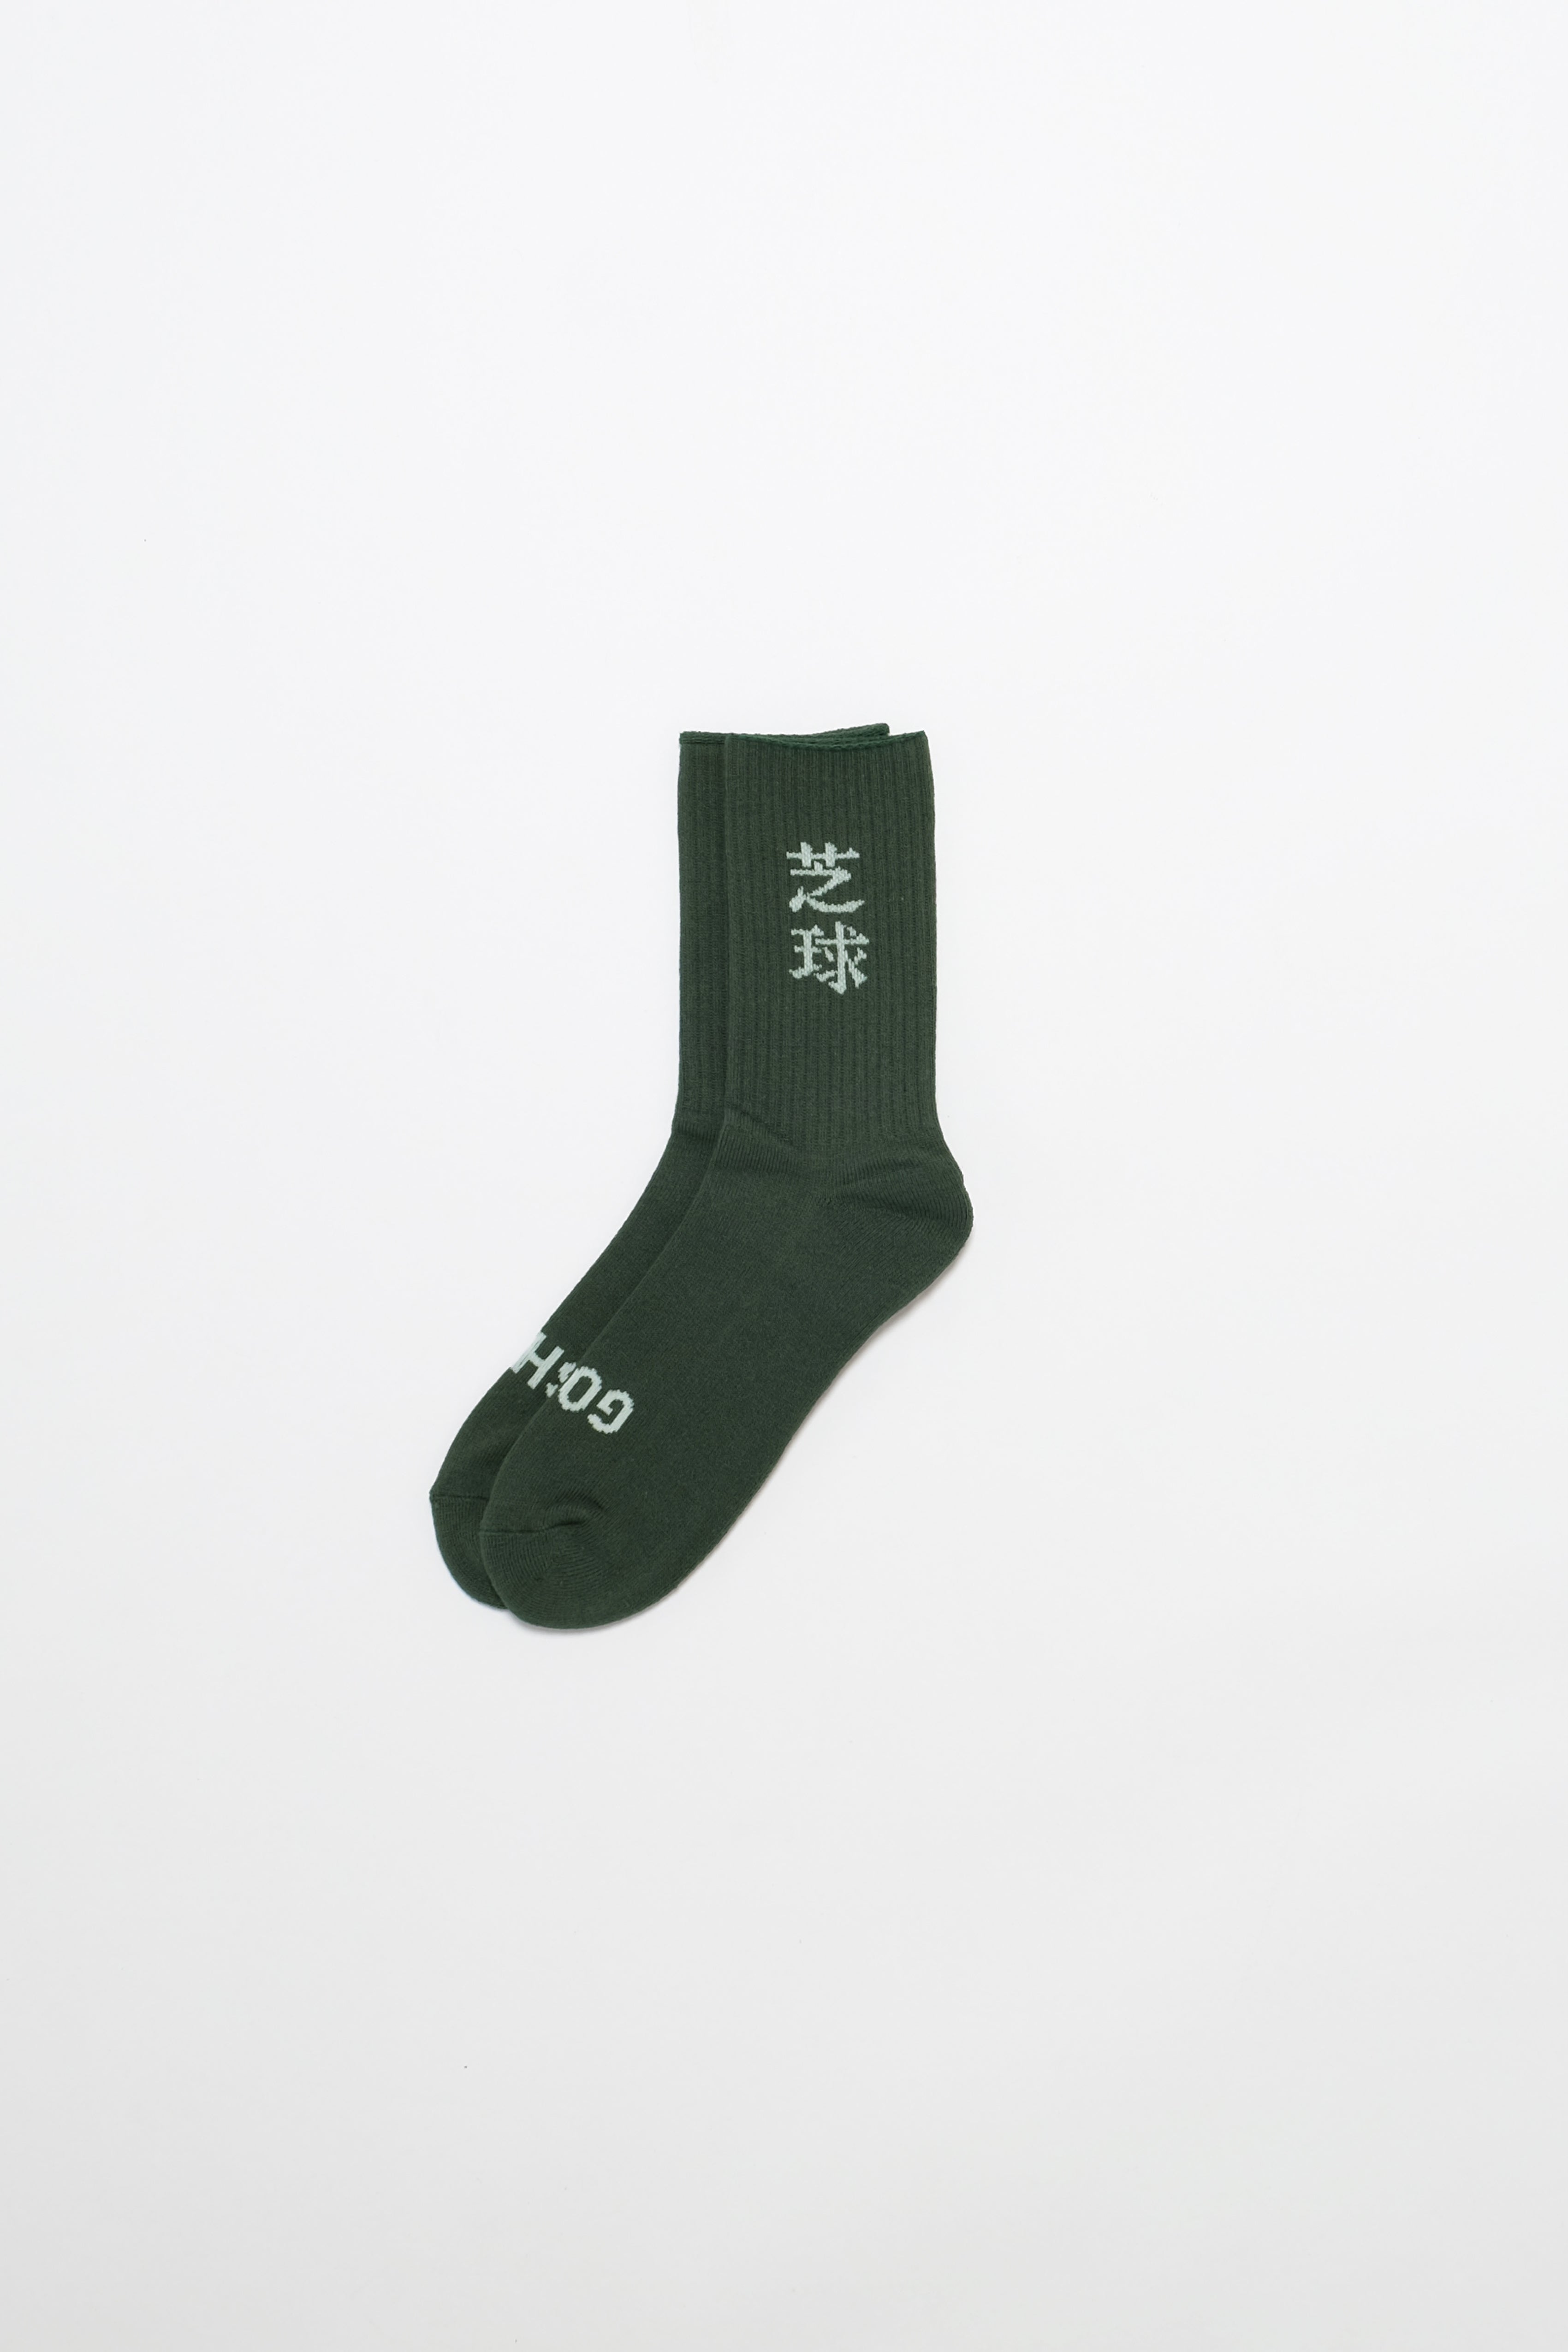 Socks - 芝球 - Green